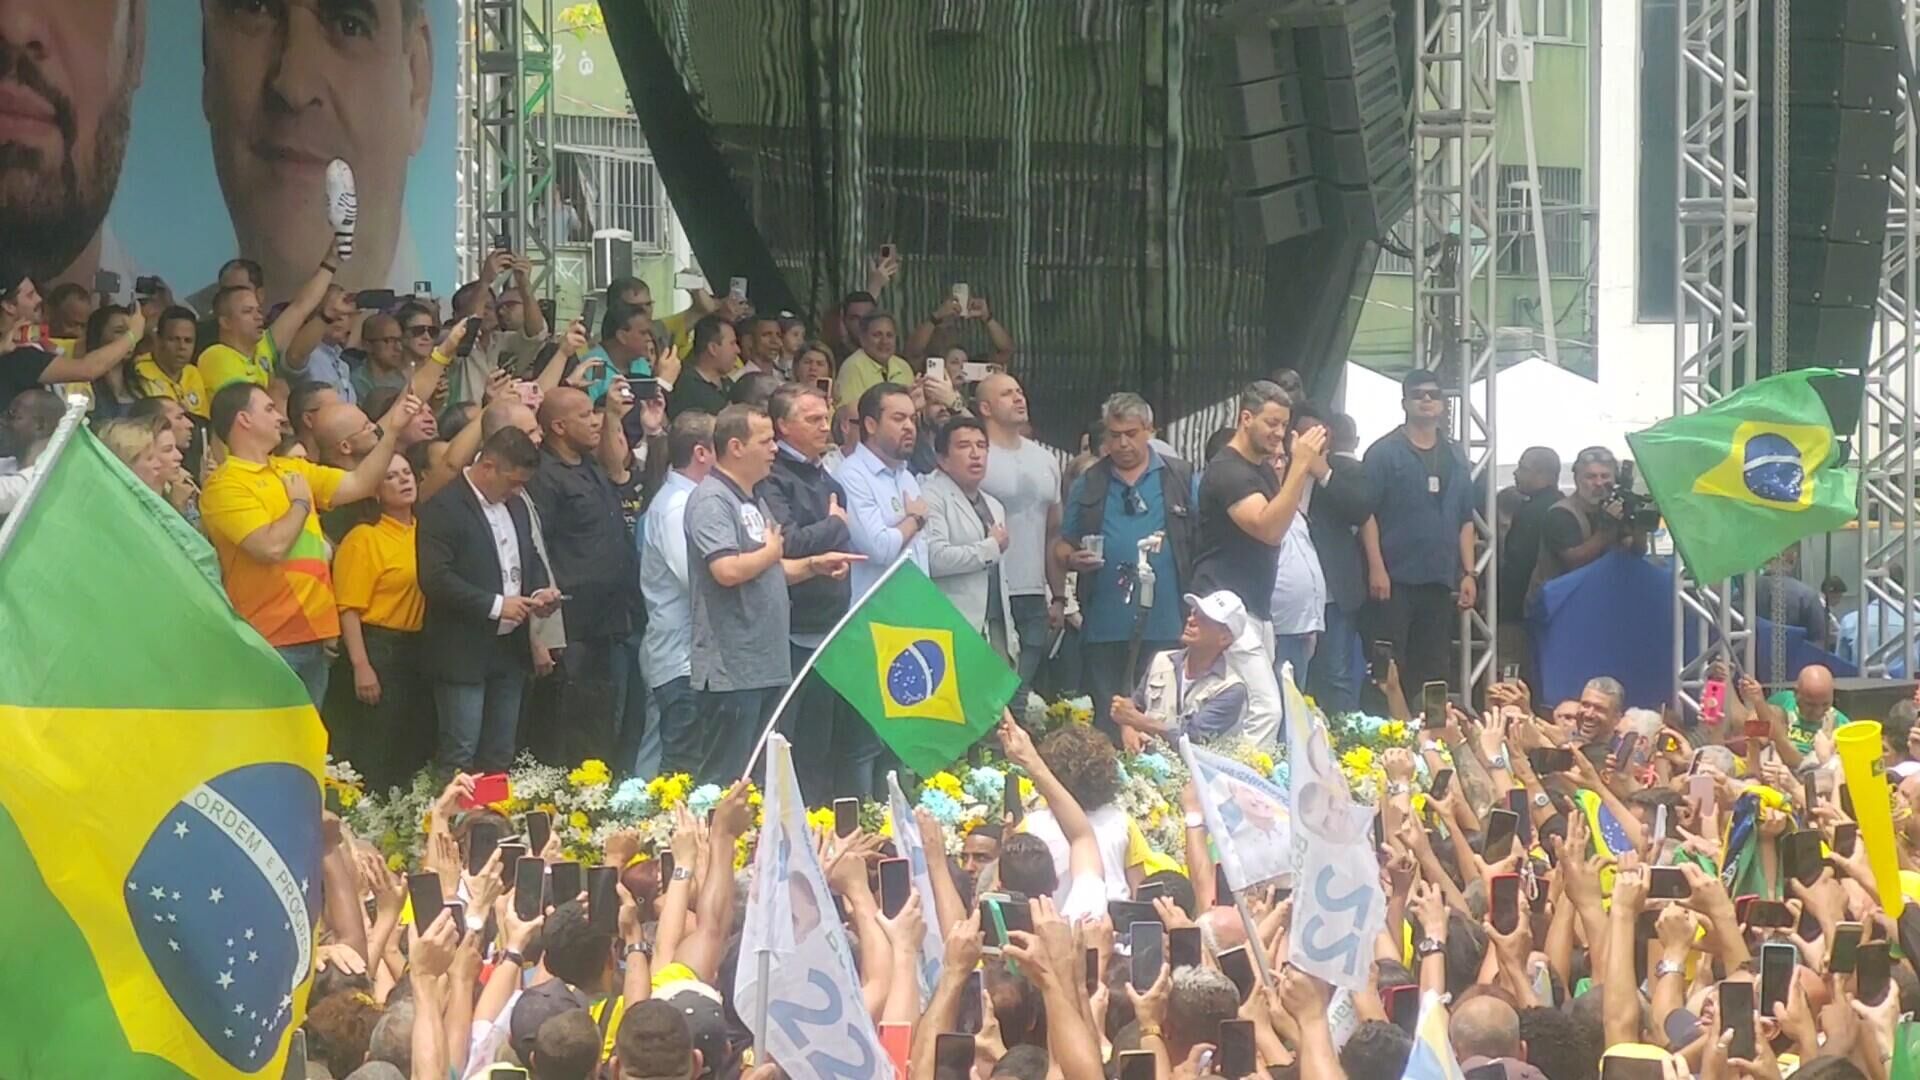 O presidente Jair Bolsonaro (PL) discursa para apoiadores em Duque de Caxias (RJ) ao lado de aliados políticos, em 14 de outubro de 2022 - Sputnik Brasil, 1920, 14.10.2022